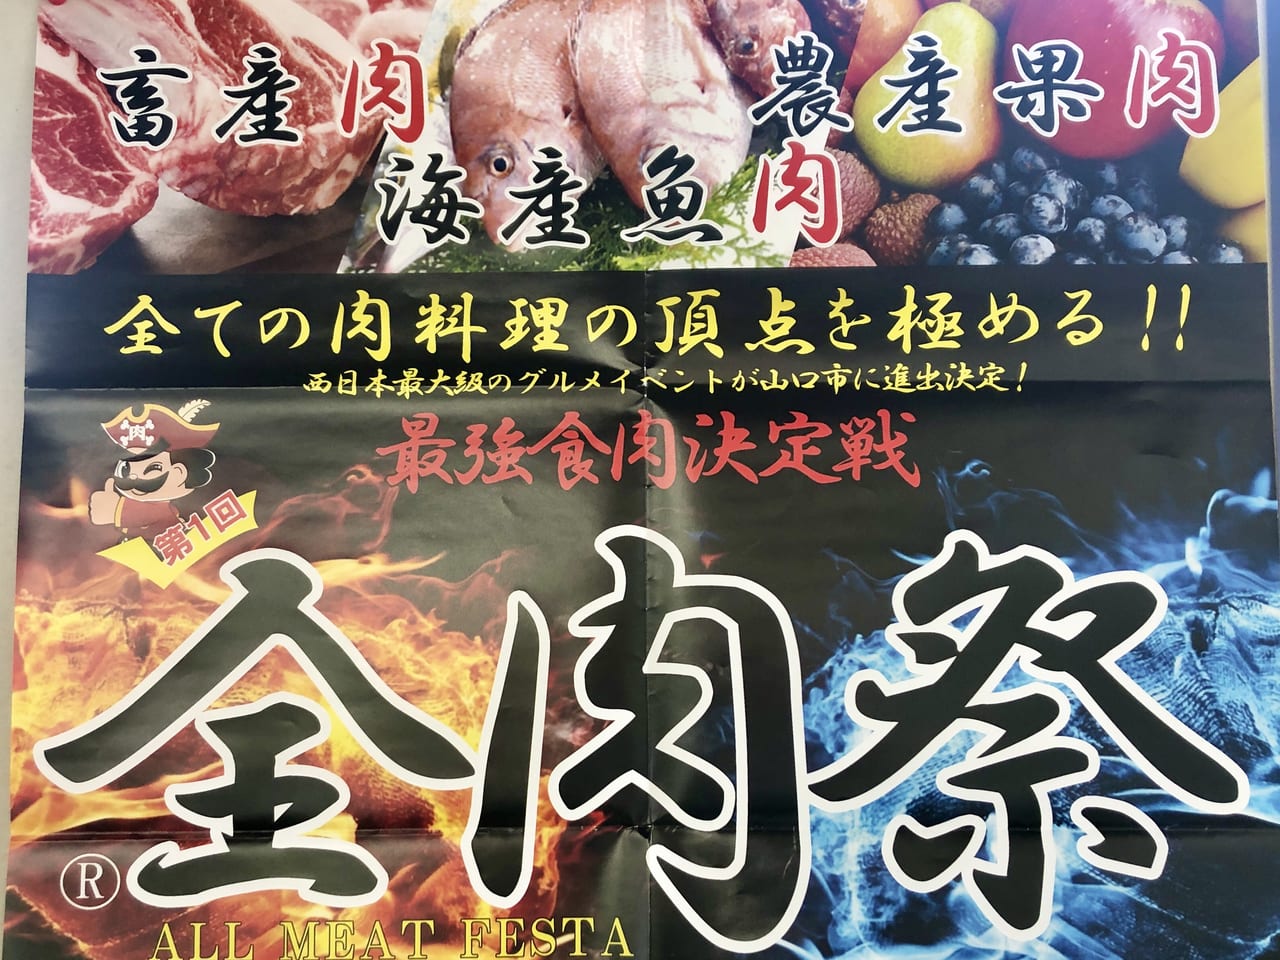 【イベント】肉祭2022 @日比谷公園 | CHAMPAGNE COLLET | シャンパーニュ「コレ」日本サイト